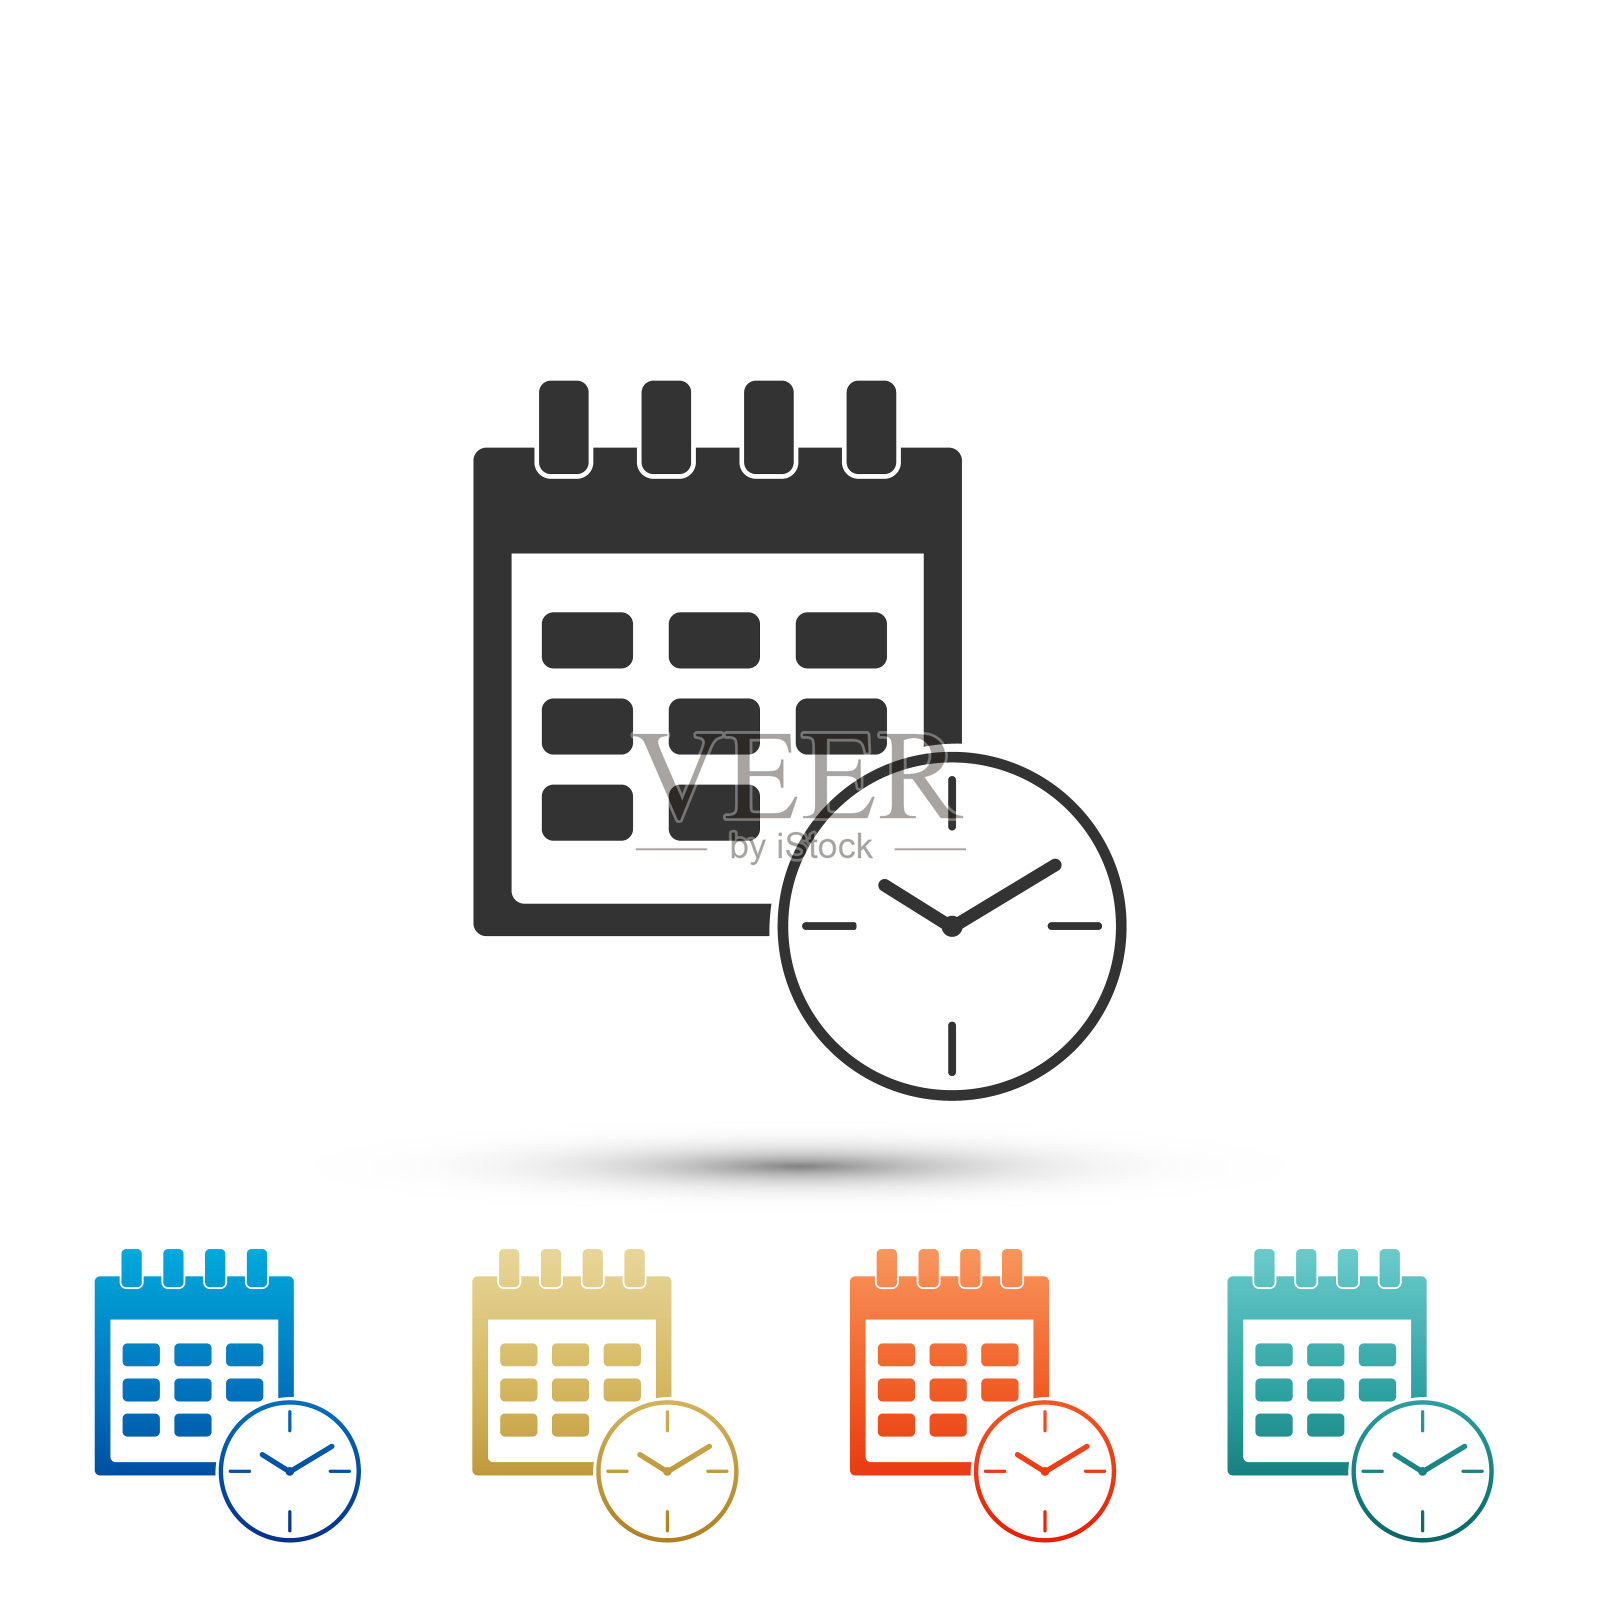 日历和时钟图标隔离在白色背景。进度表，预约，组织者，时间表，时间管理，重要日期。日期和时间标记。在颜色图标中设置元素。矢量图图标素材